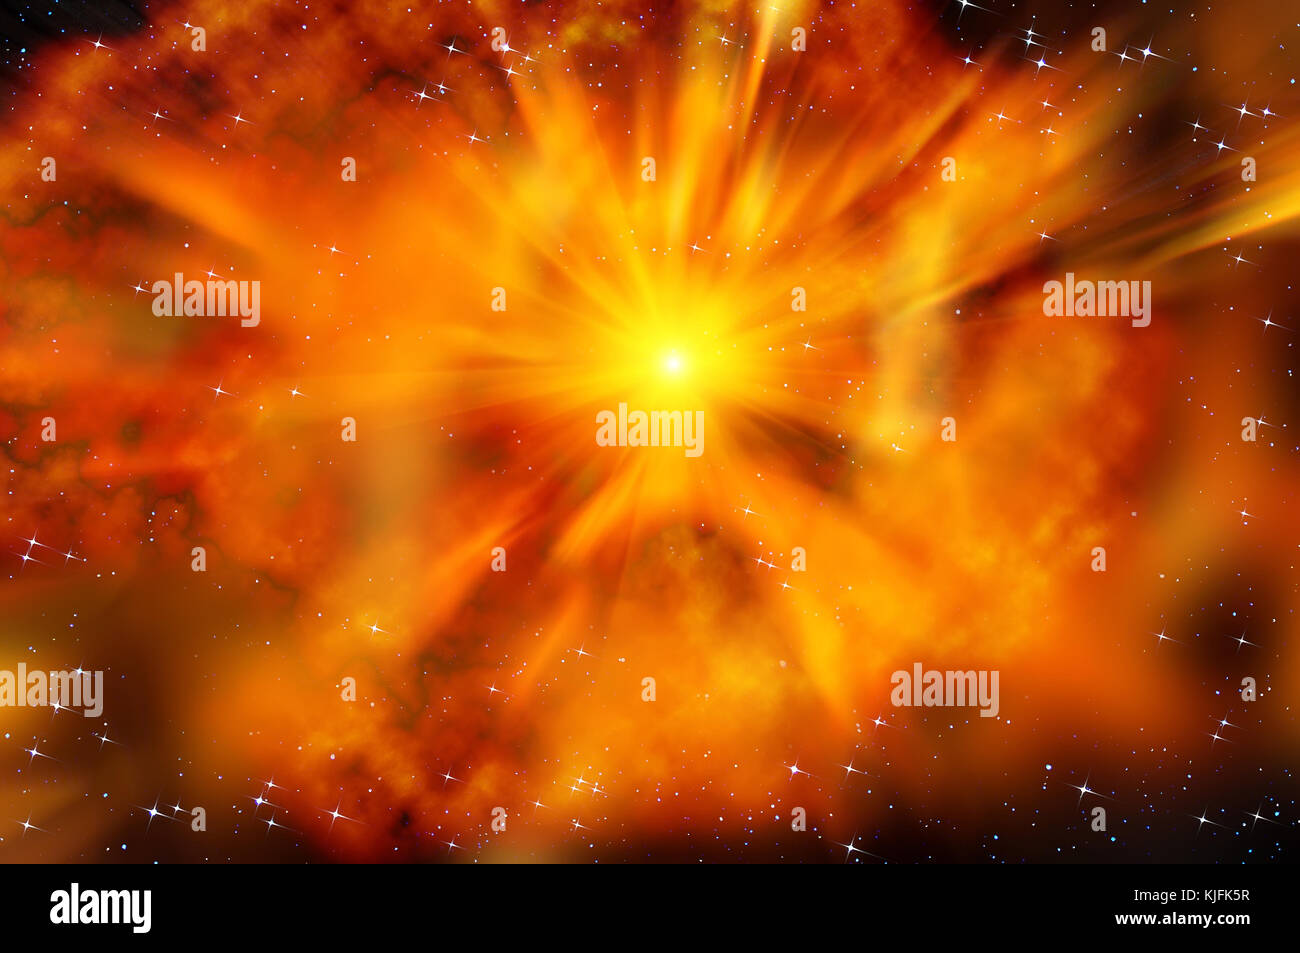 Résumé Contexte L'espace fiery avec des nébuleuses, des étoiles et de l'explosion d'une supernova dans l'espace profond Banque D'Images